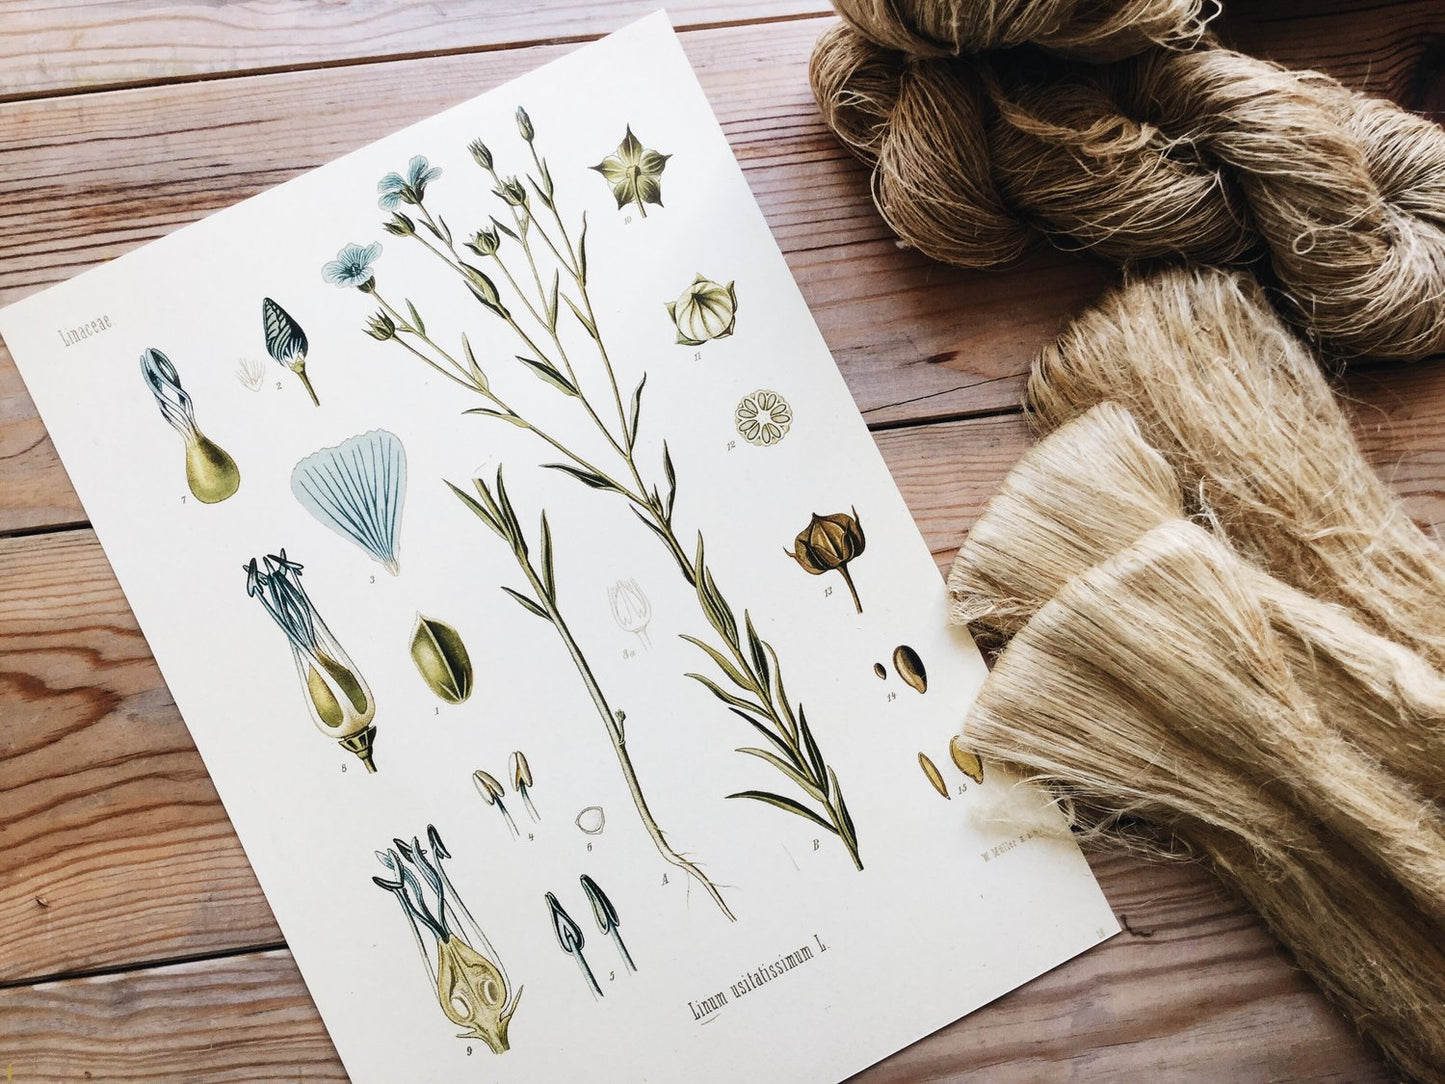 Linum usitatissimum - Botanical illustration of flax